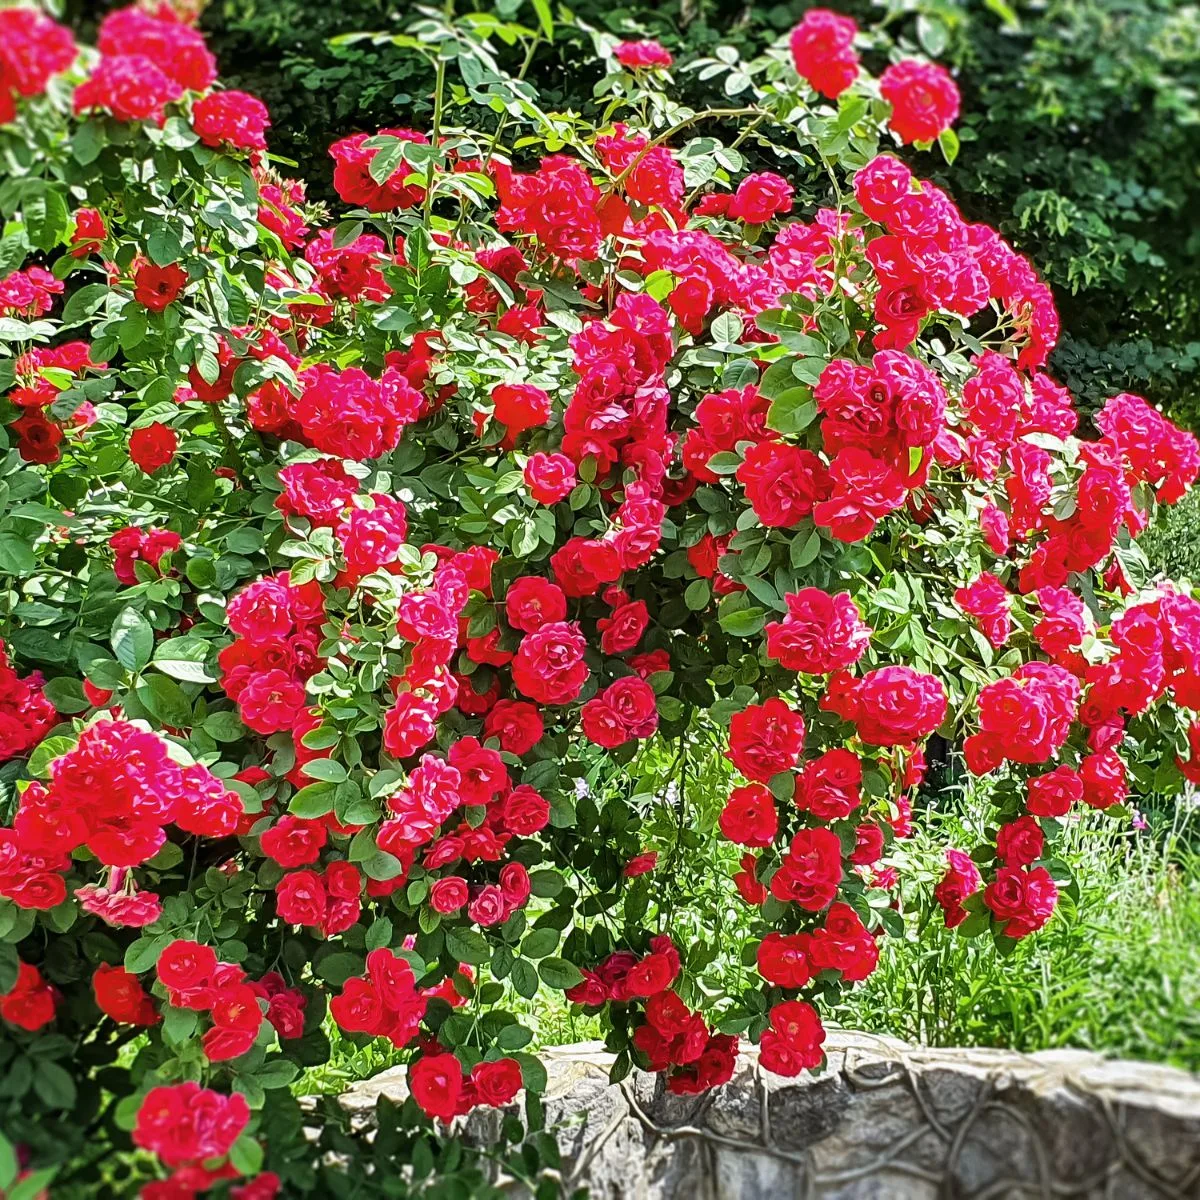 Red roses shrub in full bloom. 